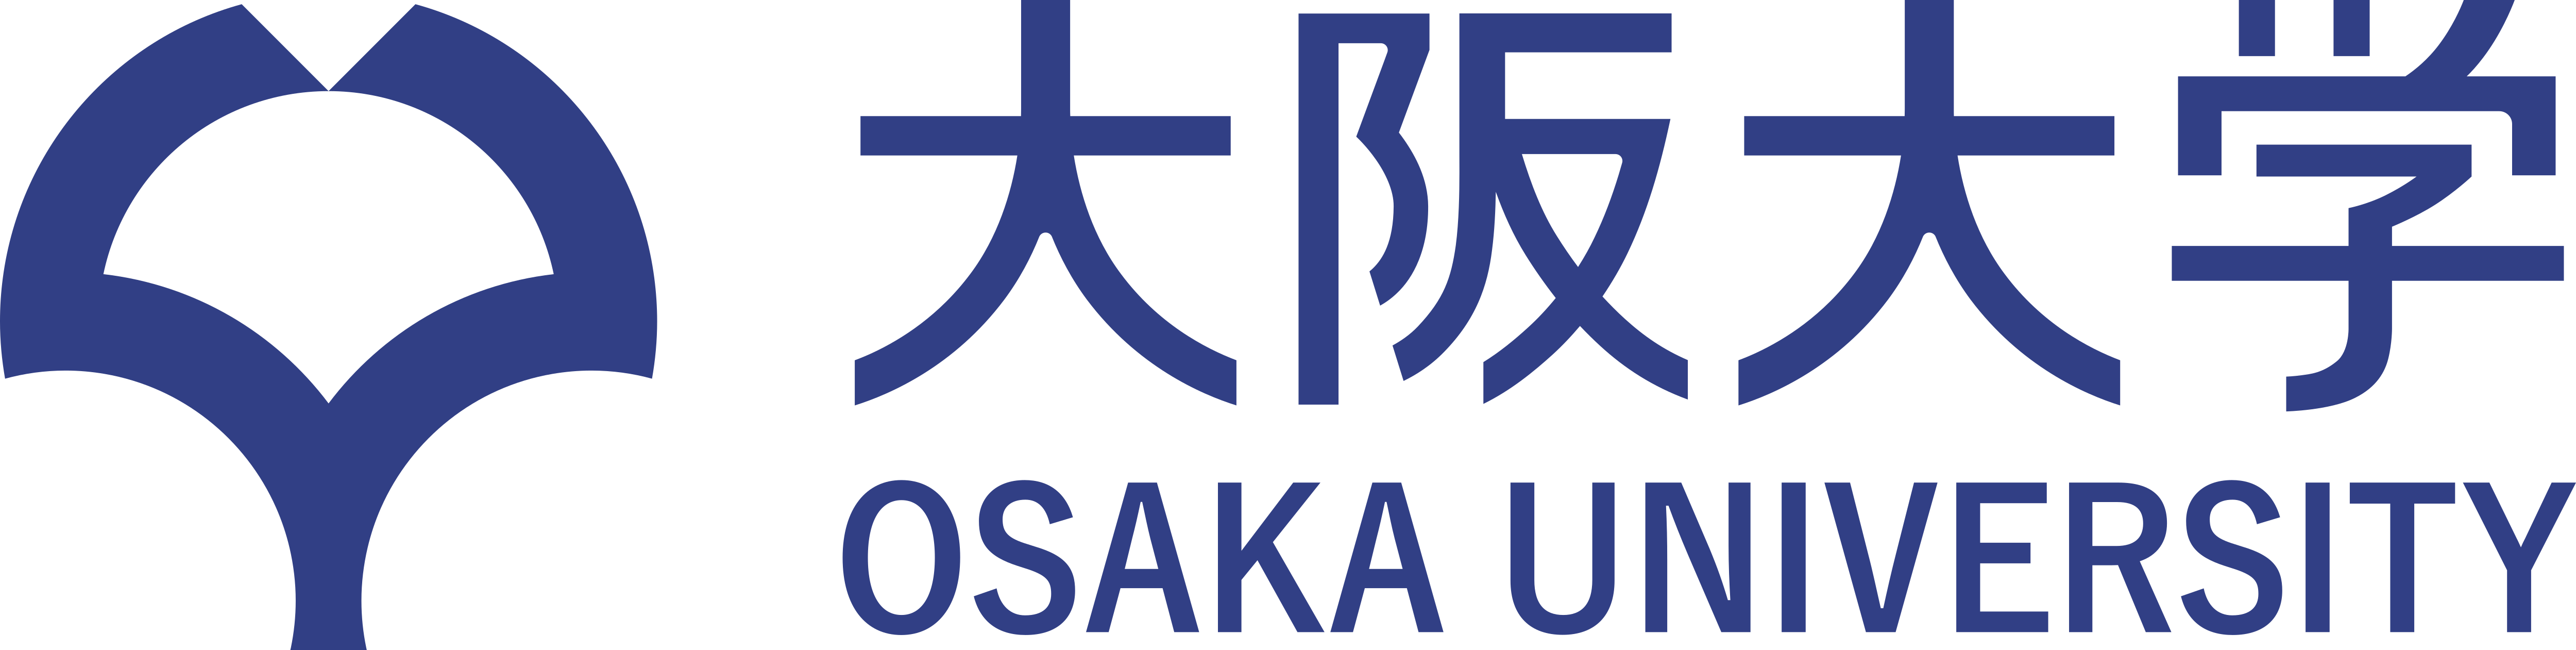 Osaka Aoyama University Japan